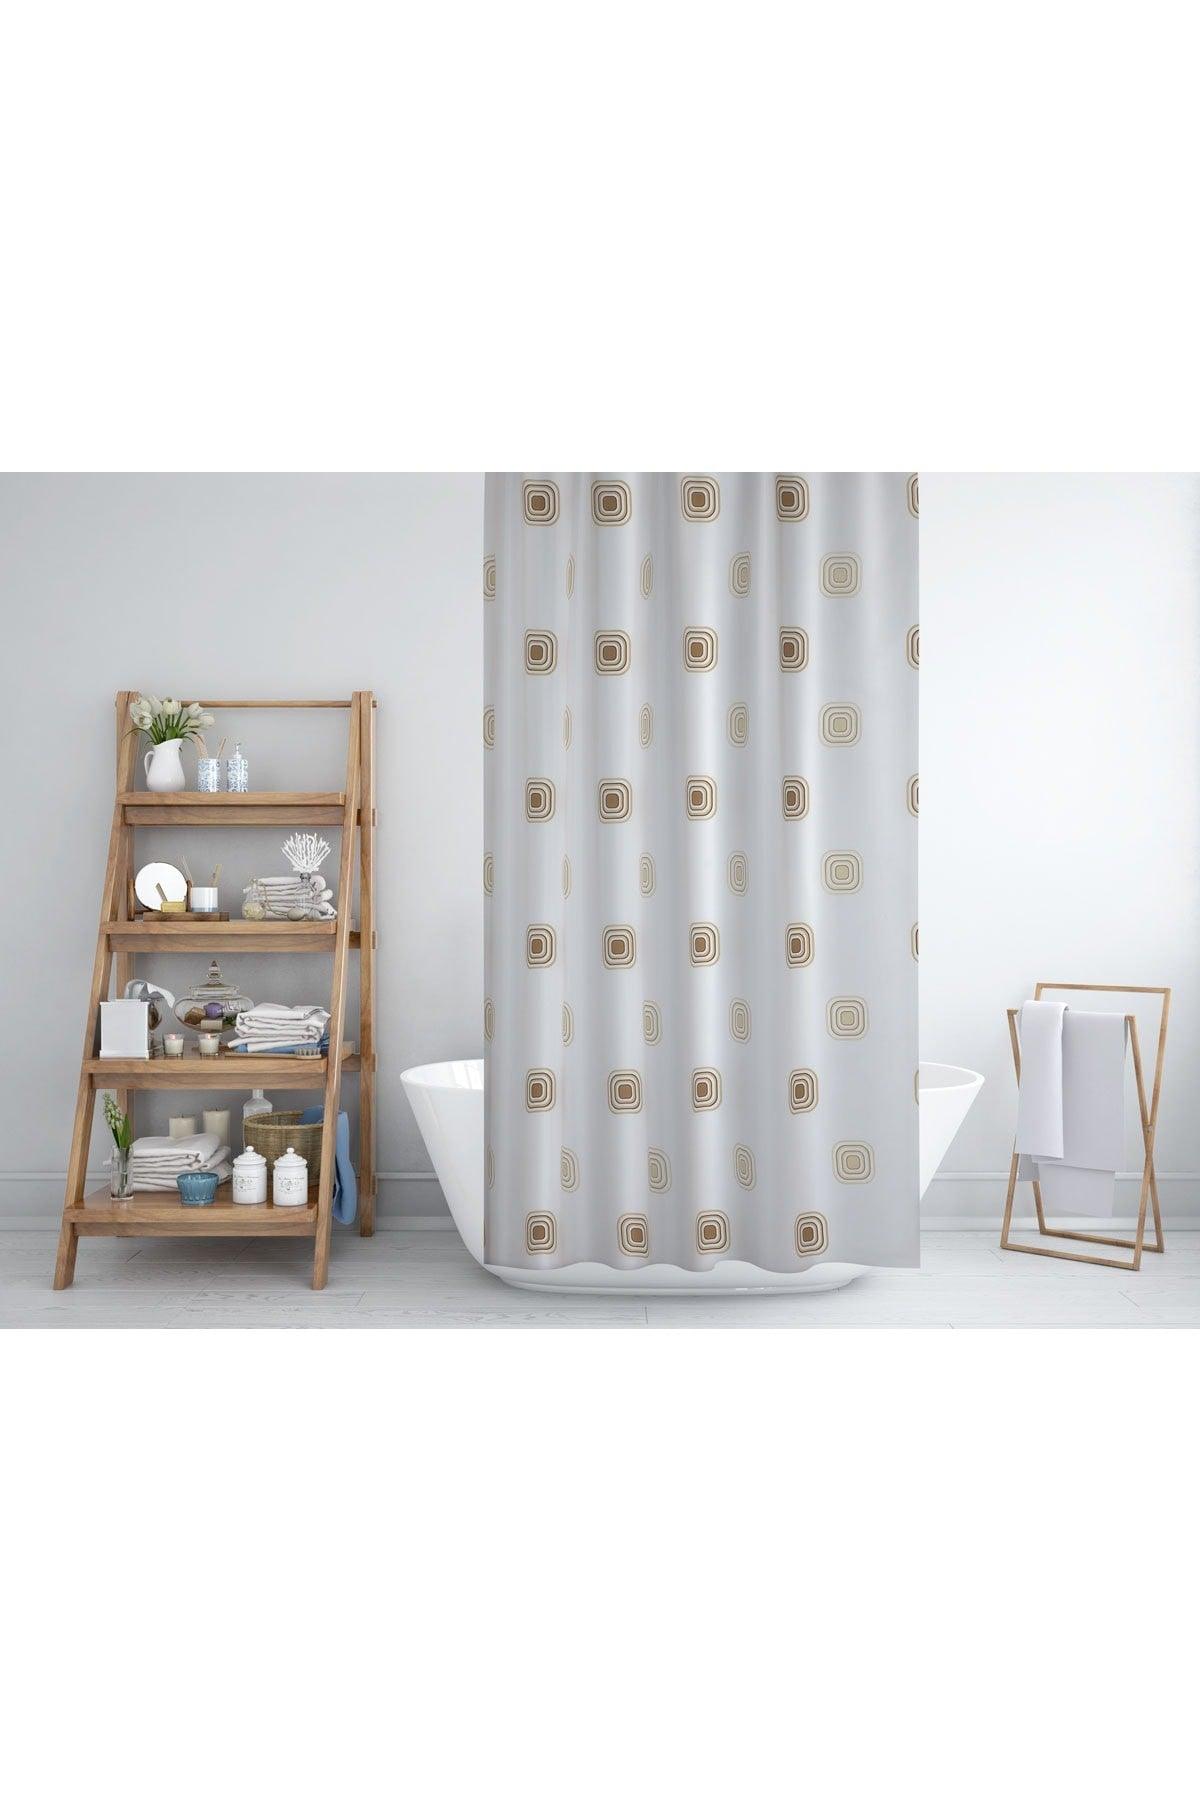 3D Shower Curtain-brown Checkered Bathroom